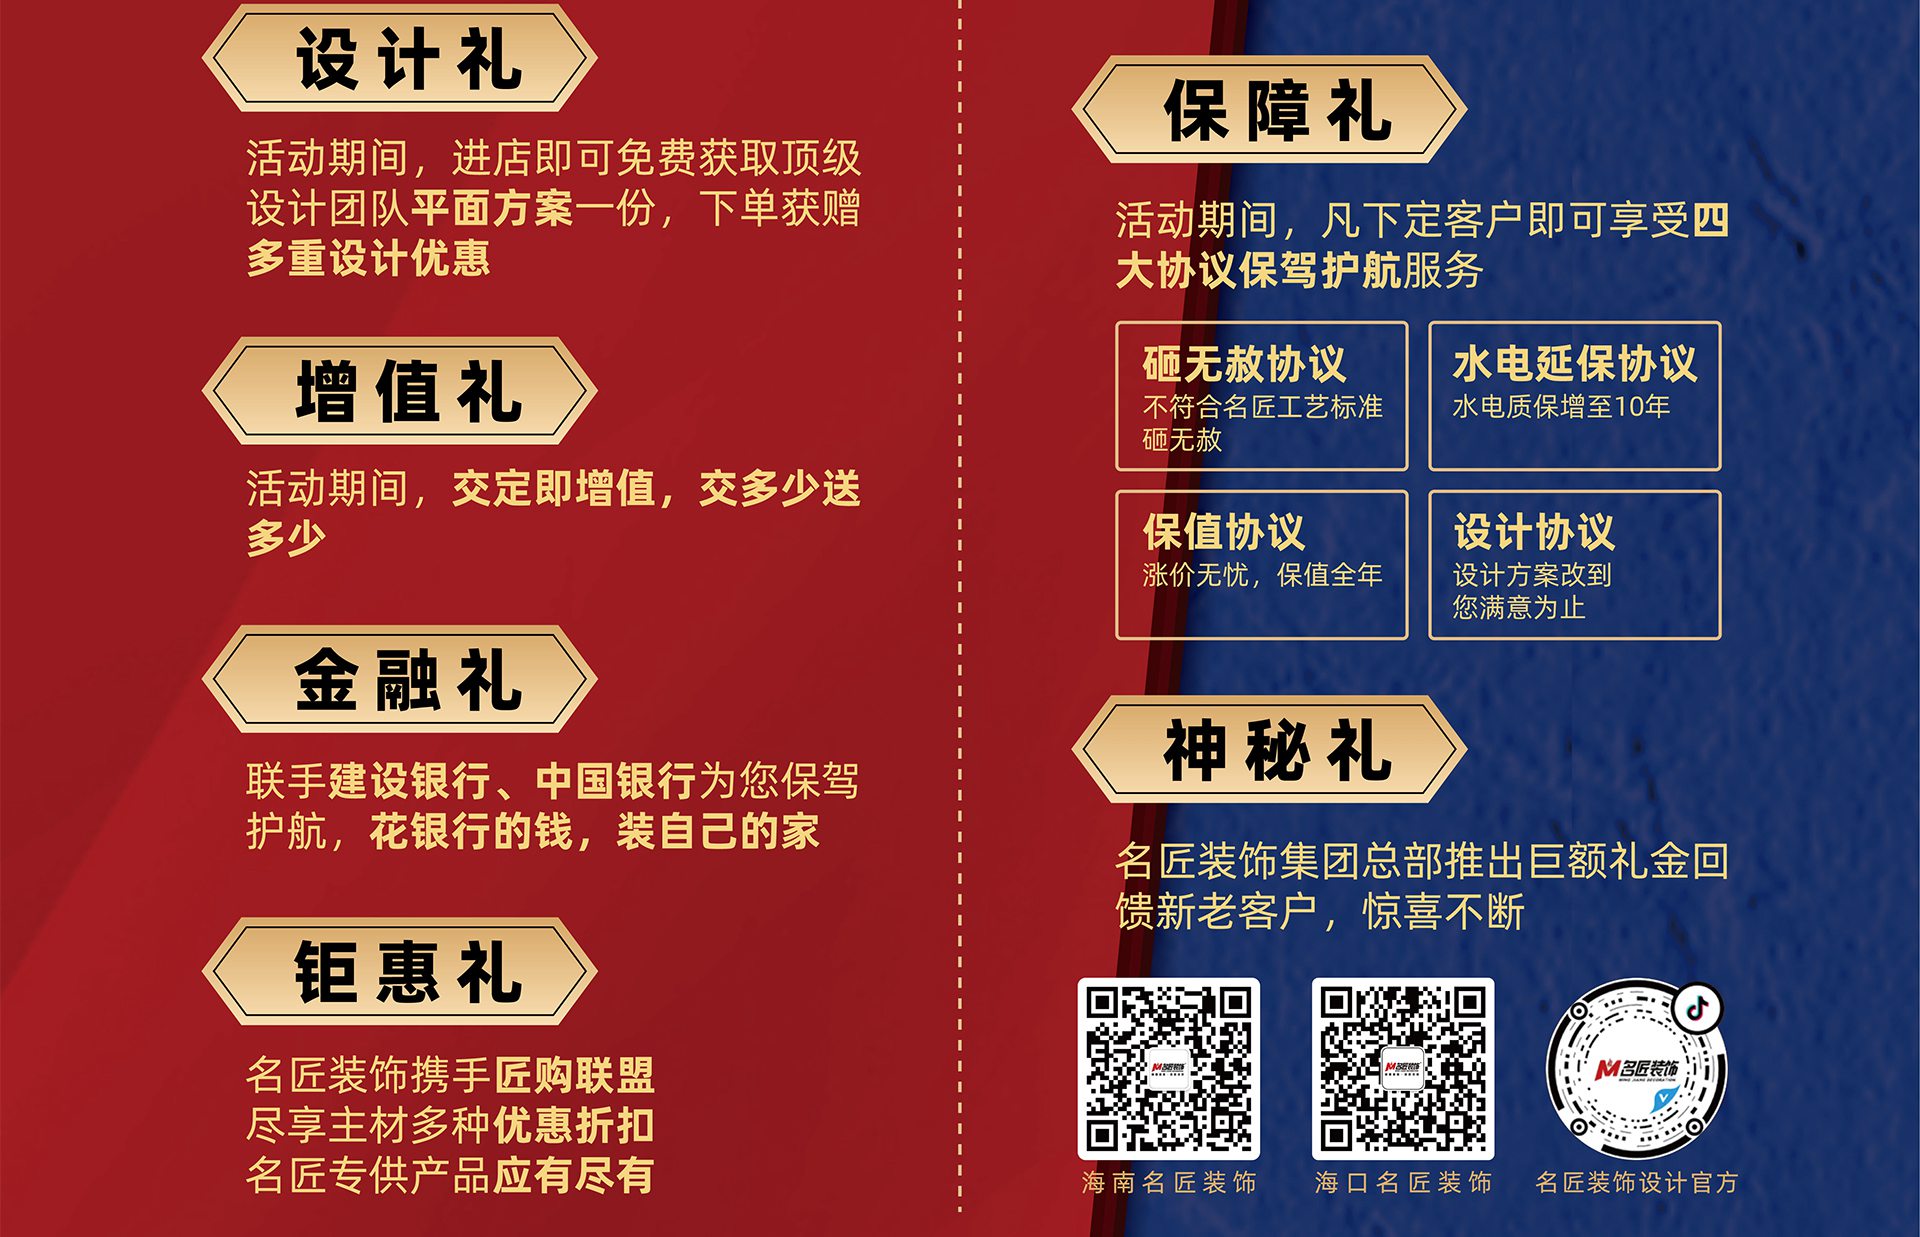 匠心中国行 世界杯压球官方网站设计礼遇节